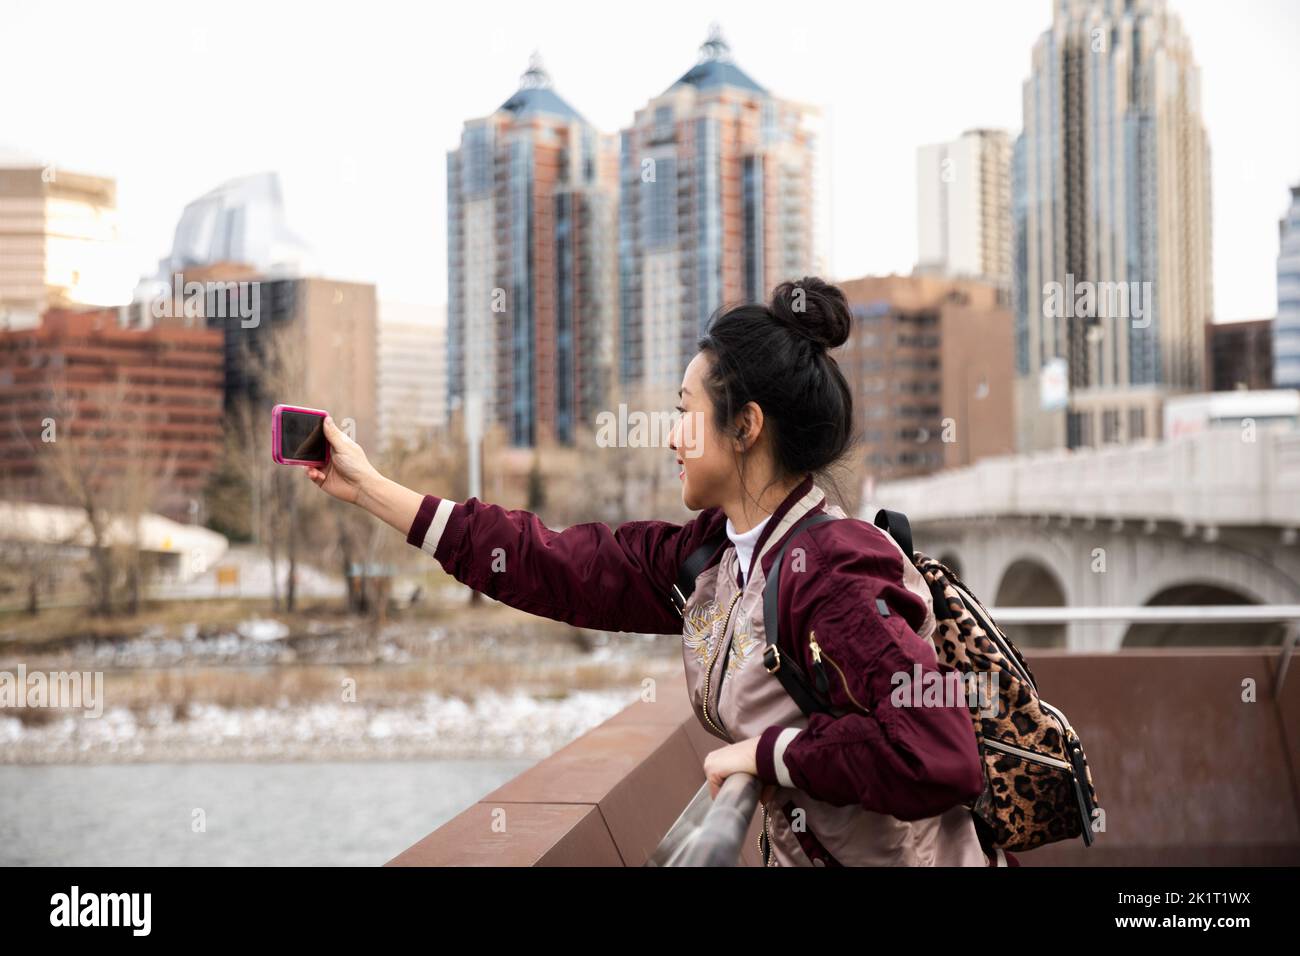 Une femme heureuse touriste qui prend un selfie avec un téléphone photo dans le parc de la ville Banque D'Images